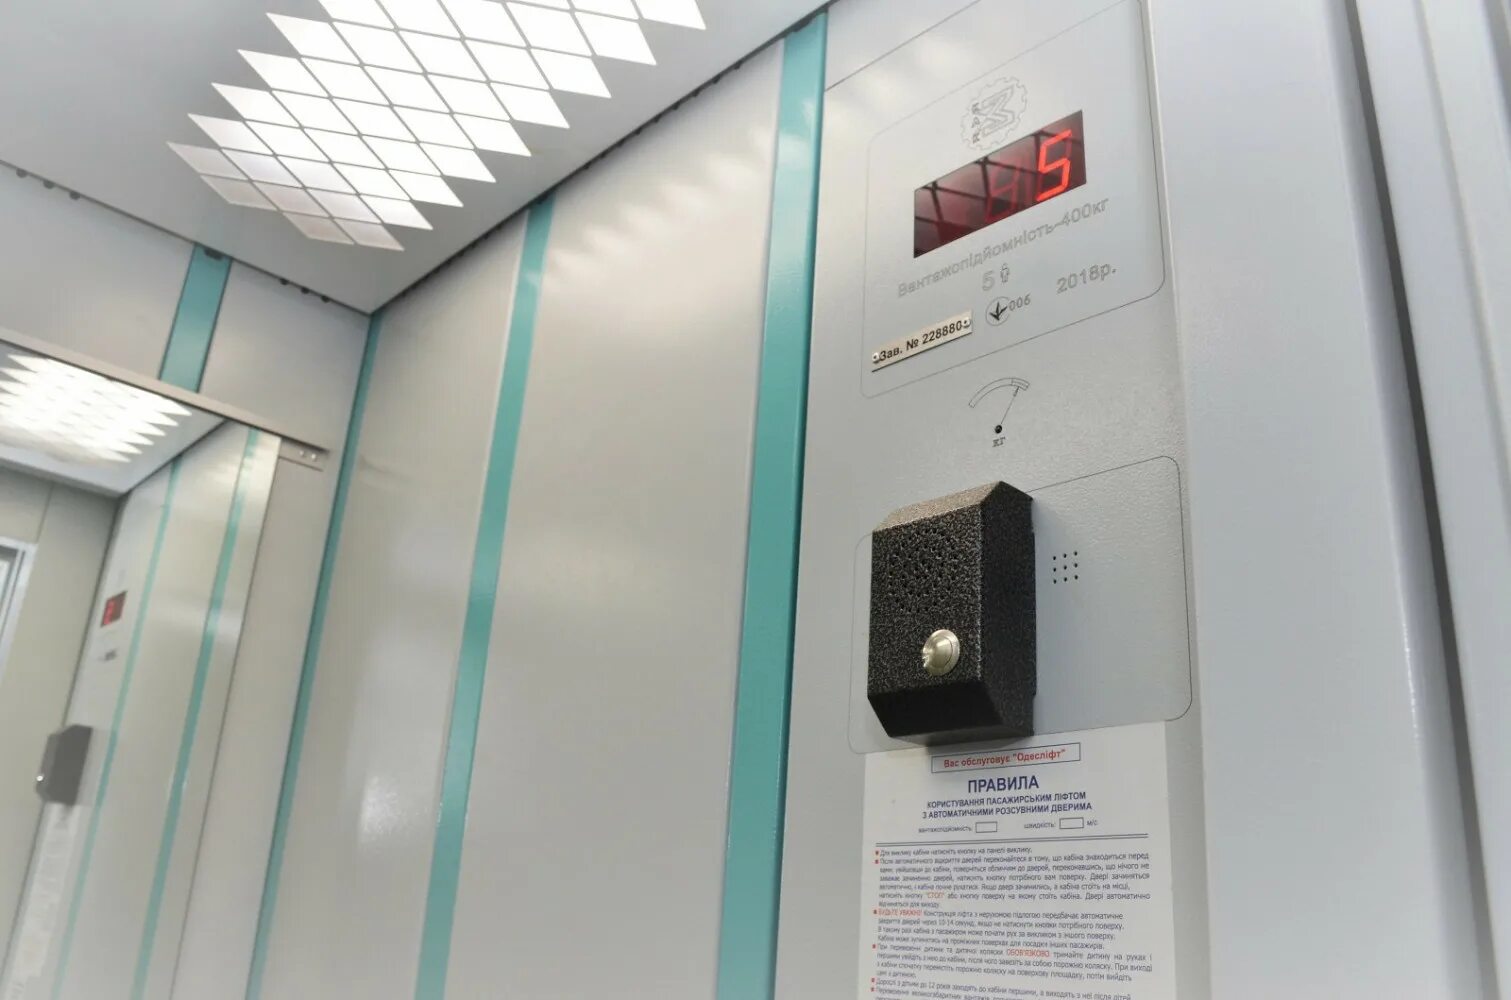 Телефон лифтовой службы. Панель лифта Сиблифт. Лифт Сиблифт кабина. Модернизированный лифт ЩЛЗ. Блок вызова диспетчера лифта.